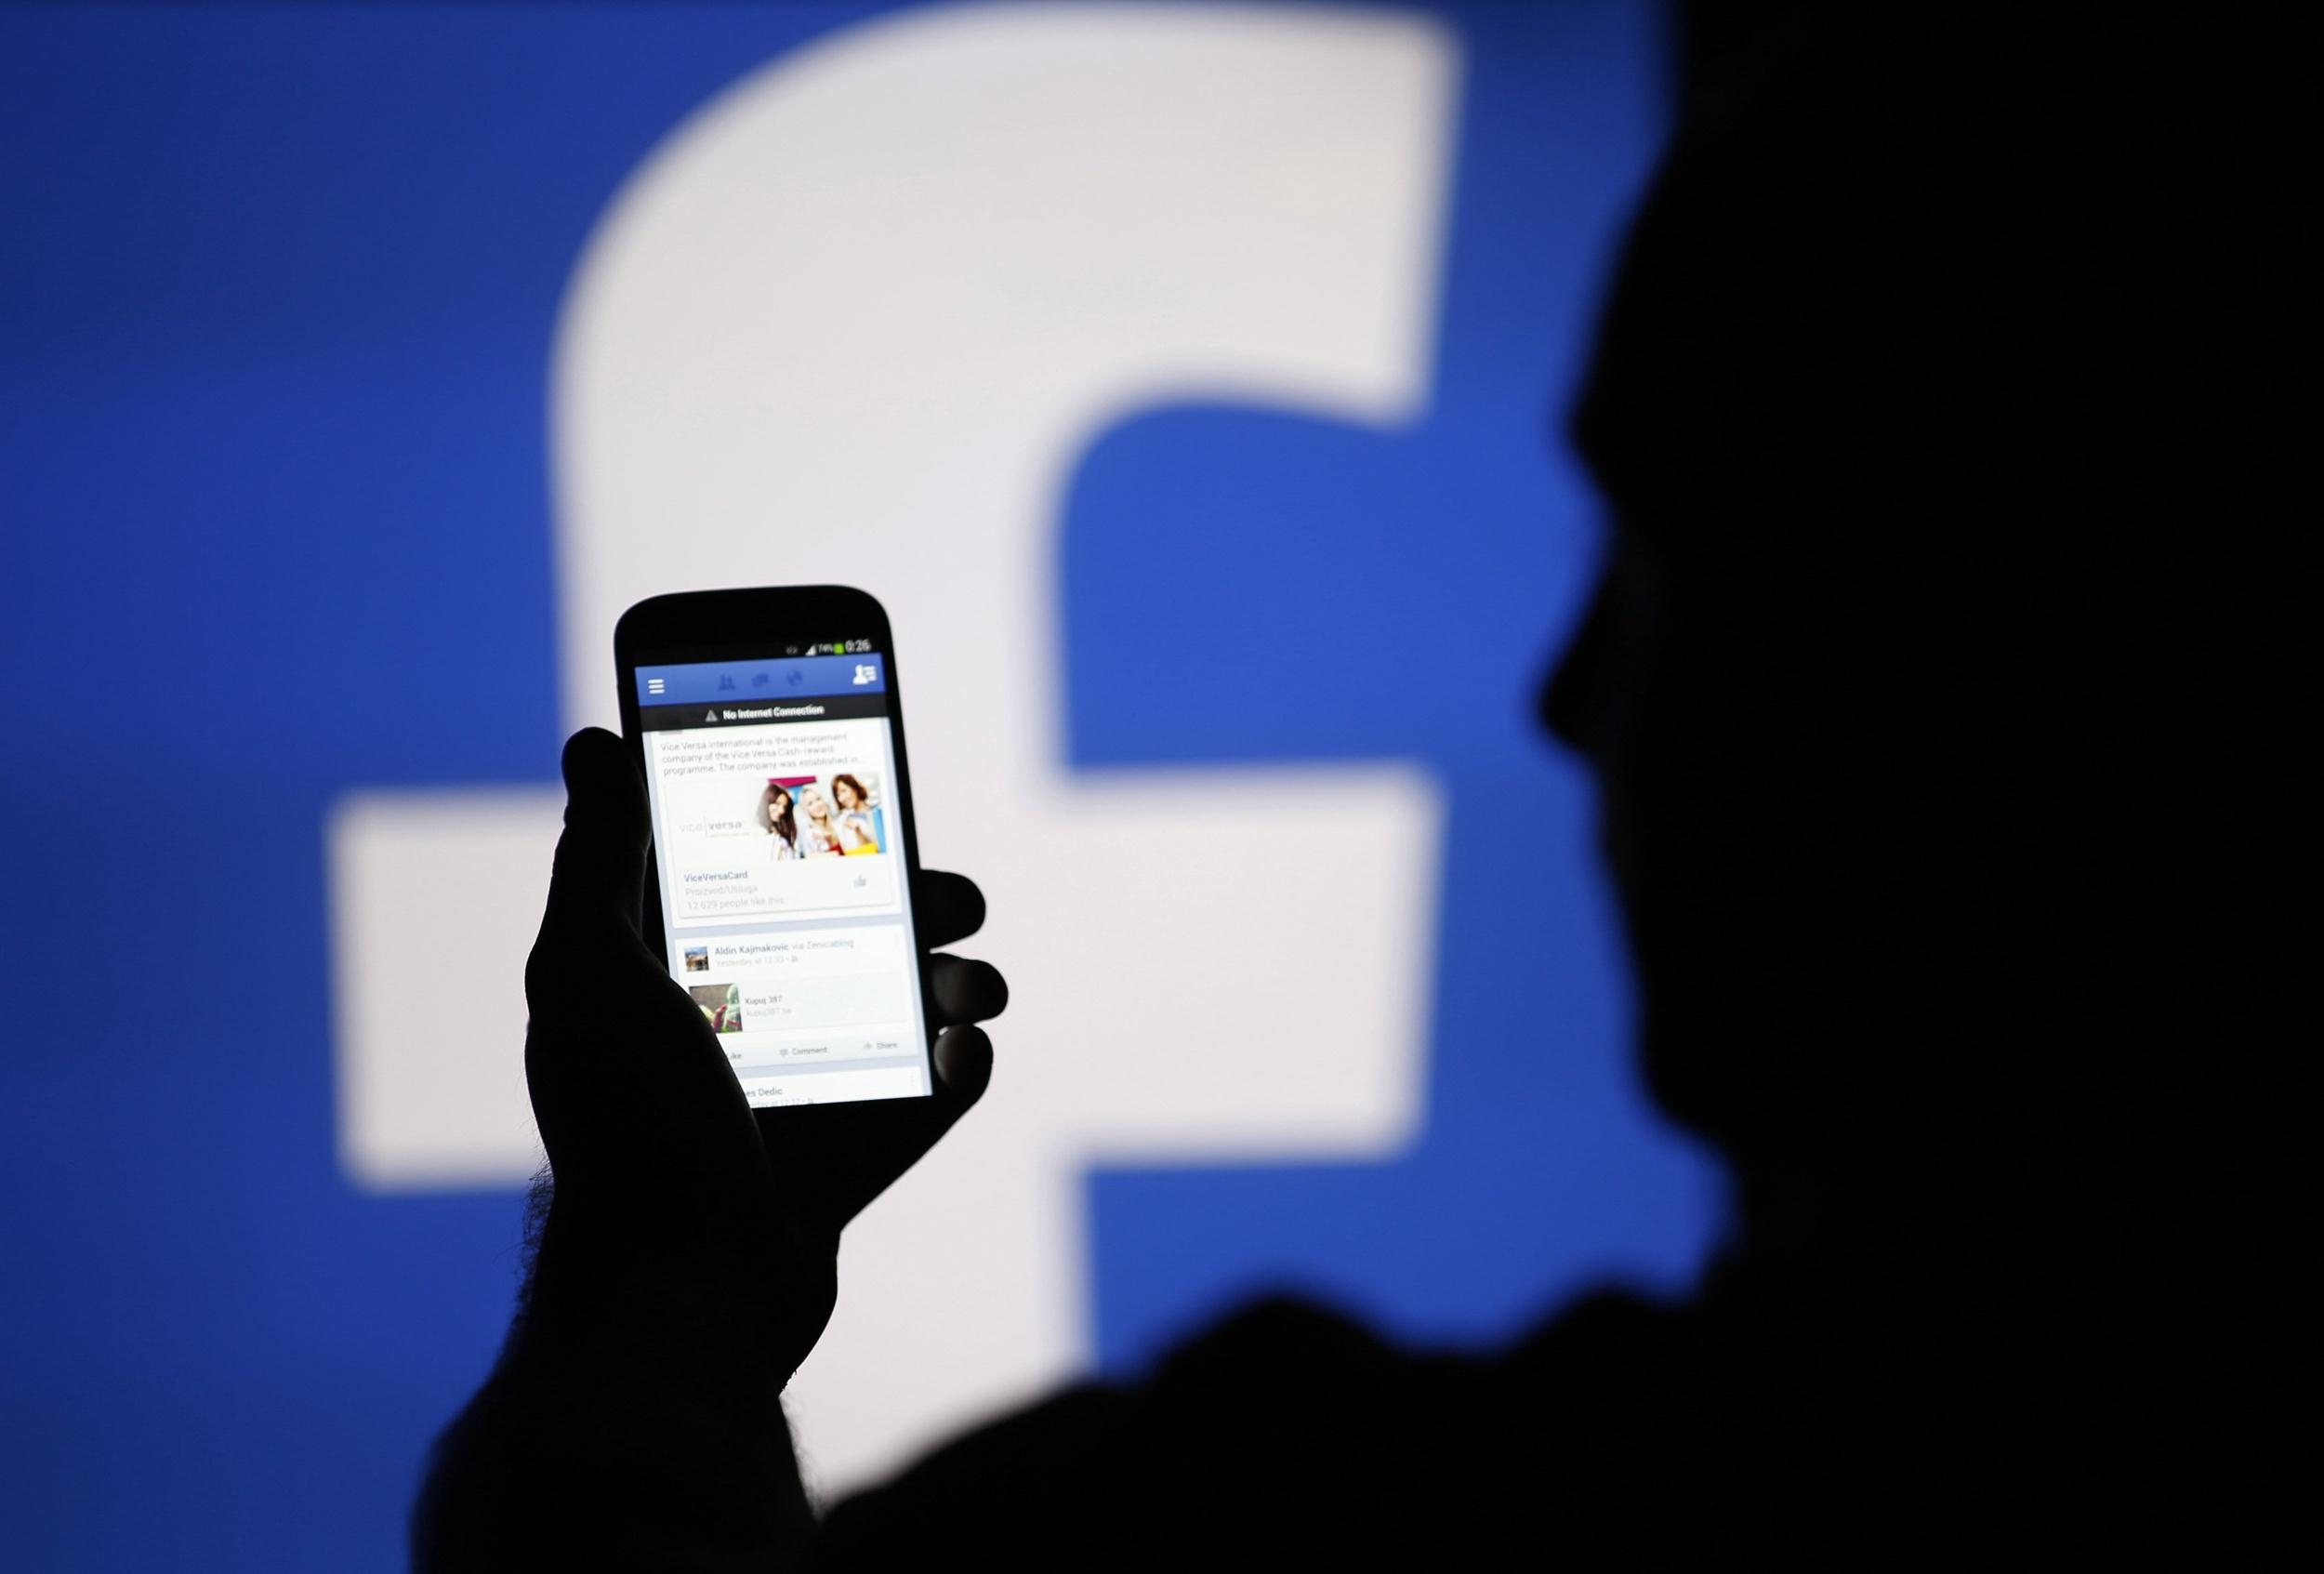 براءة اختراع تكشف خطة “فيسبوك” للتجسس على المستخدمين